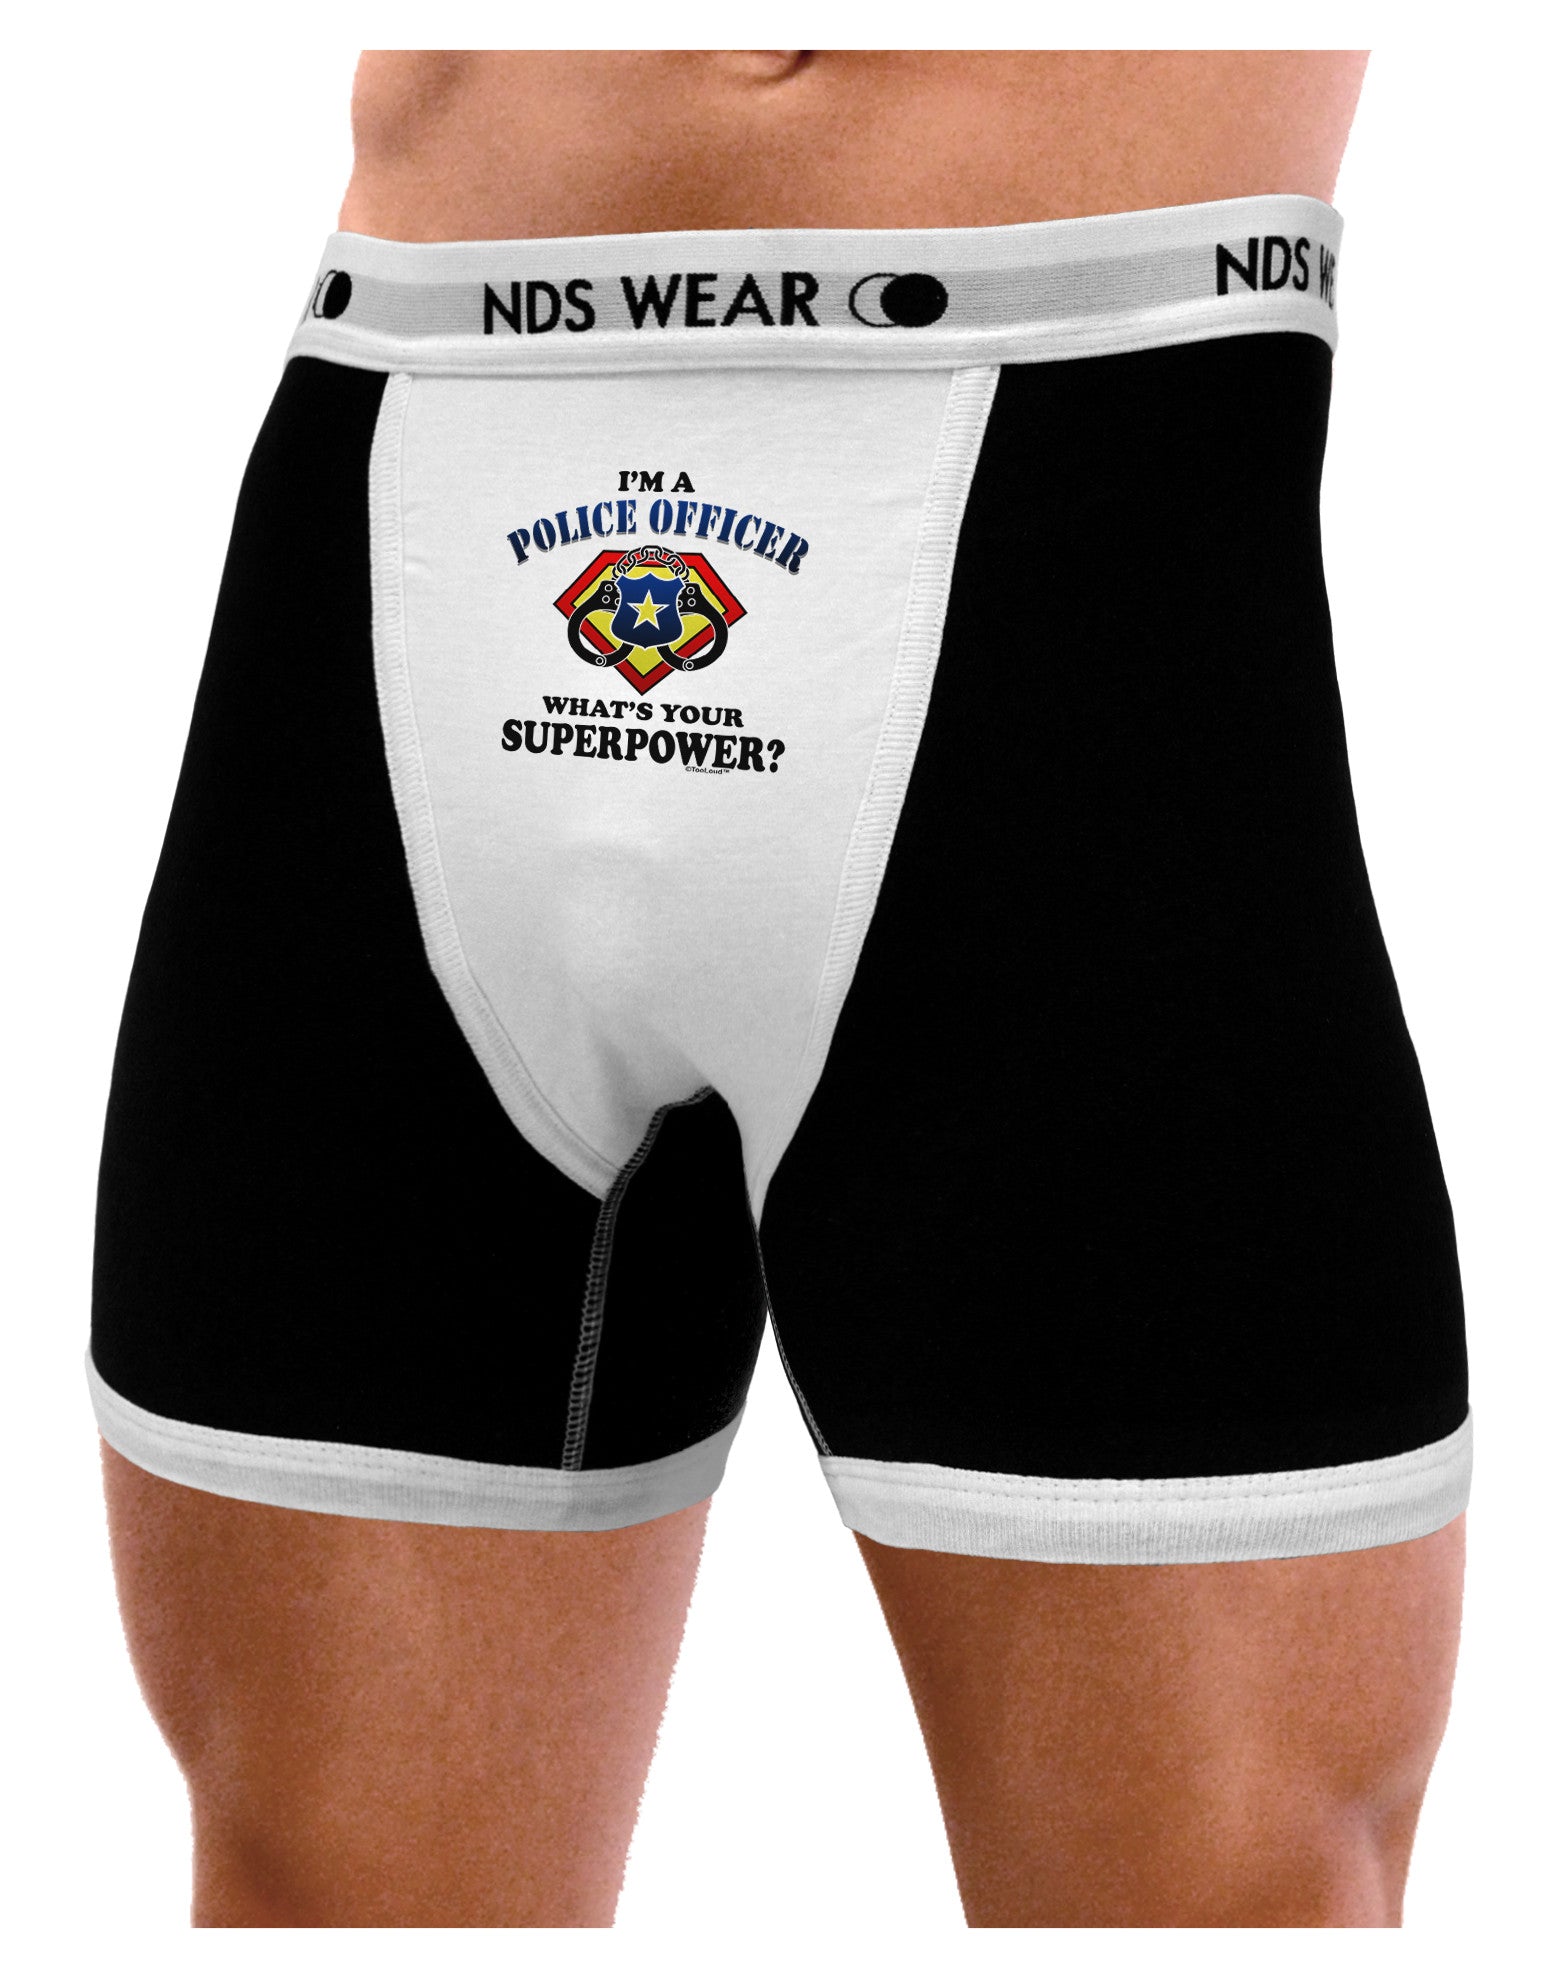 Police Officer - Superpower Mens NDS Wear Boxer Brief Underwear